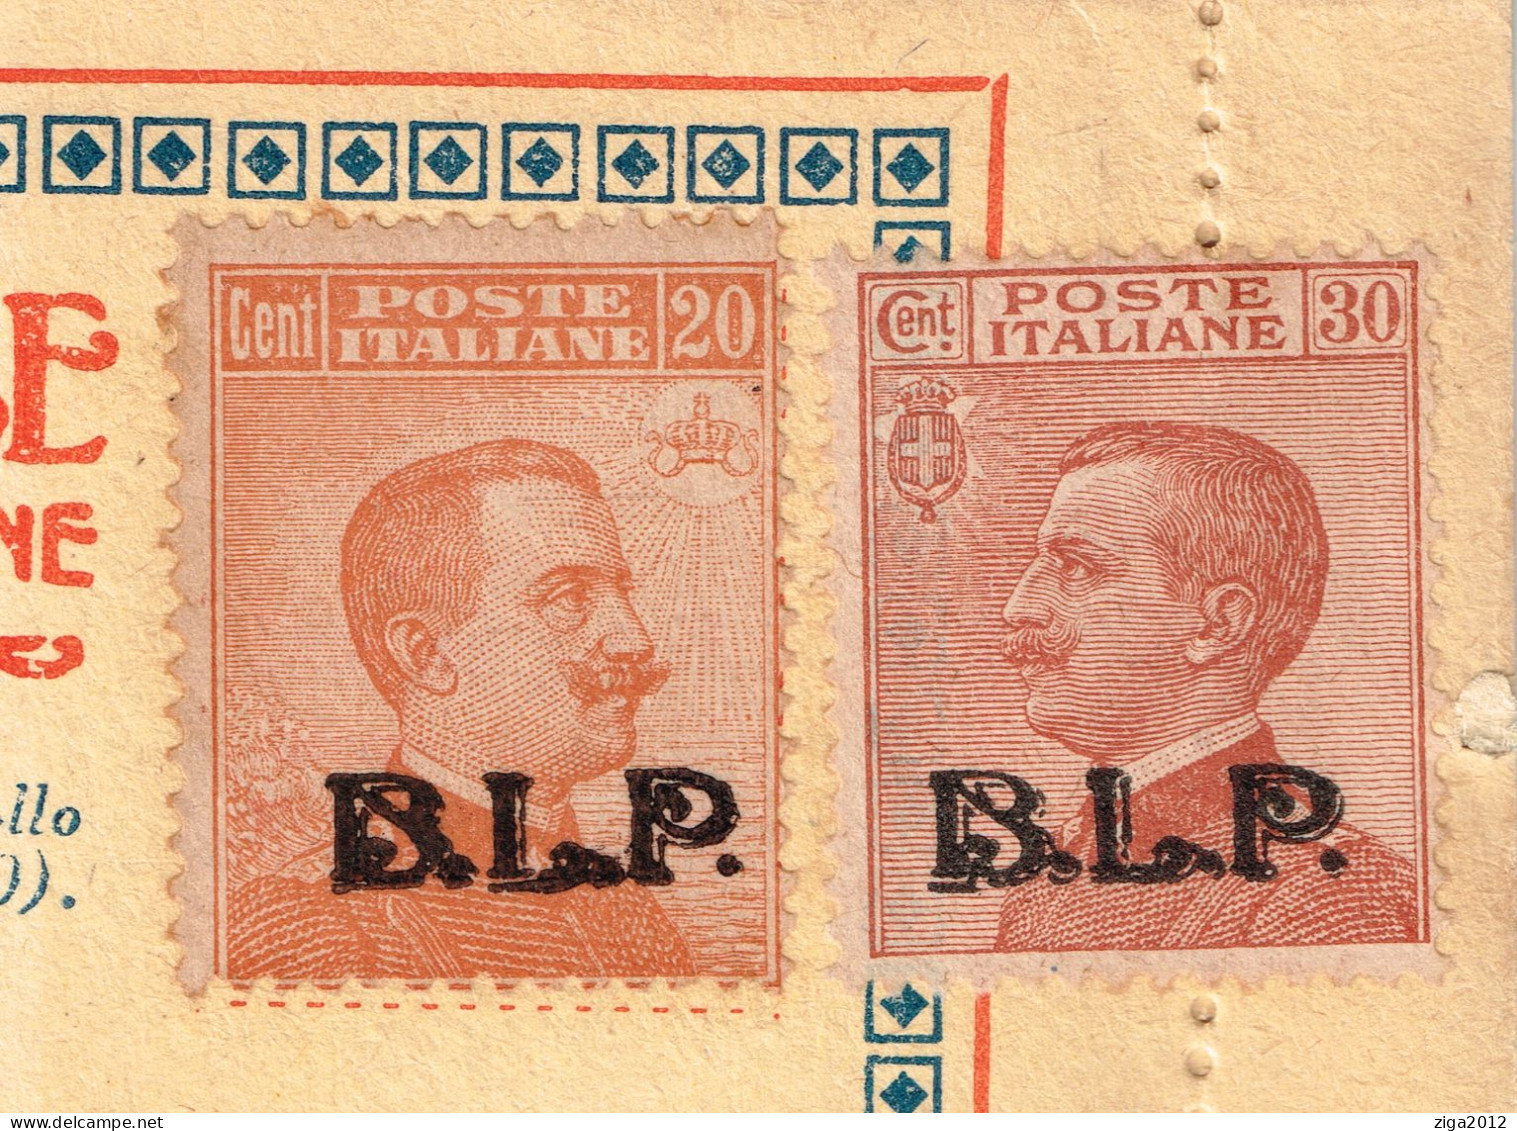 ITALY 1923 B.L.P. BUSTA LETTERA POSTALE CON C.20 III° TIPO + C.30 III° TIPO NUOVA E COMPLETA - Reklame